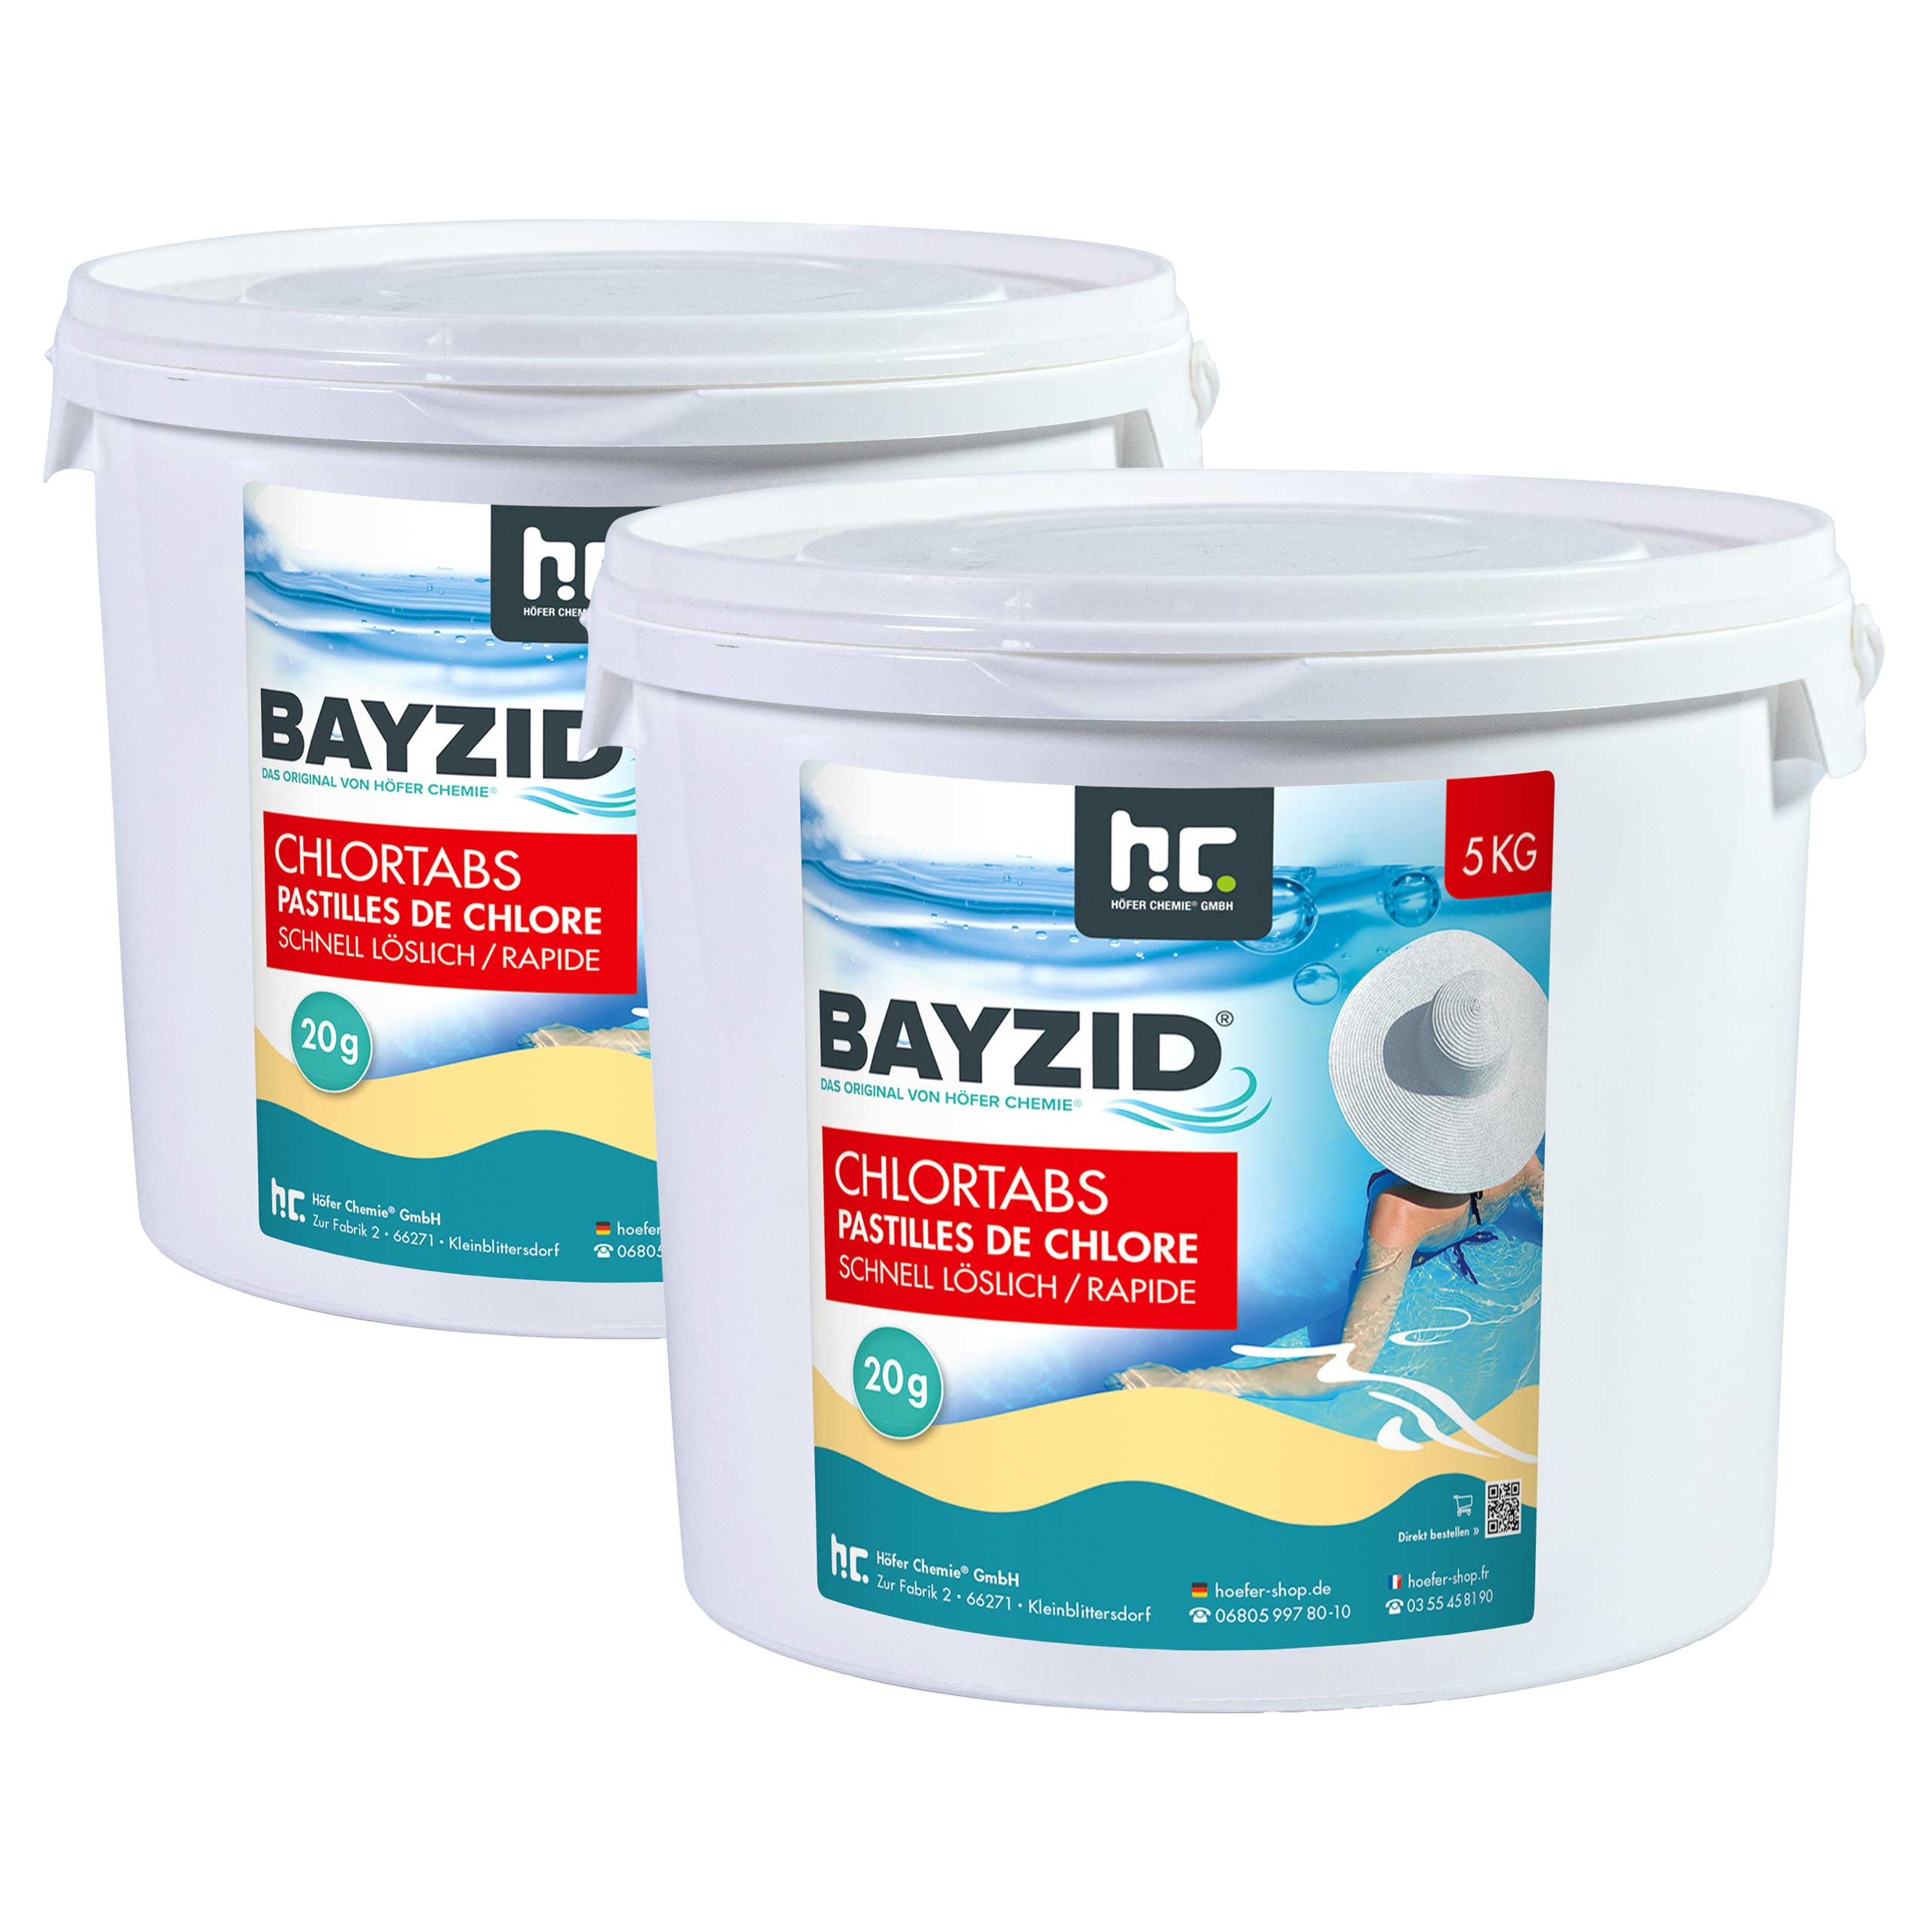 5 kg BAYZID® Pastilles de Chlore choc 20g